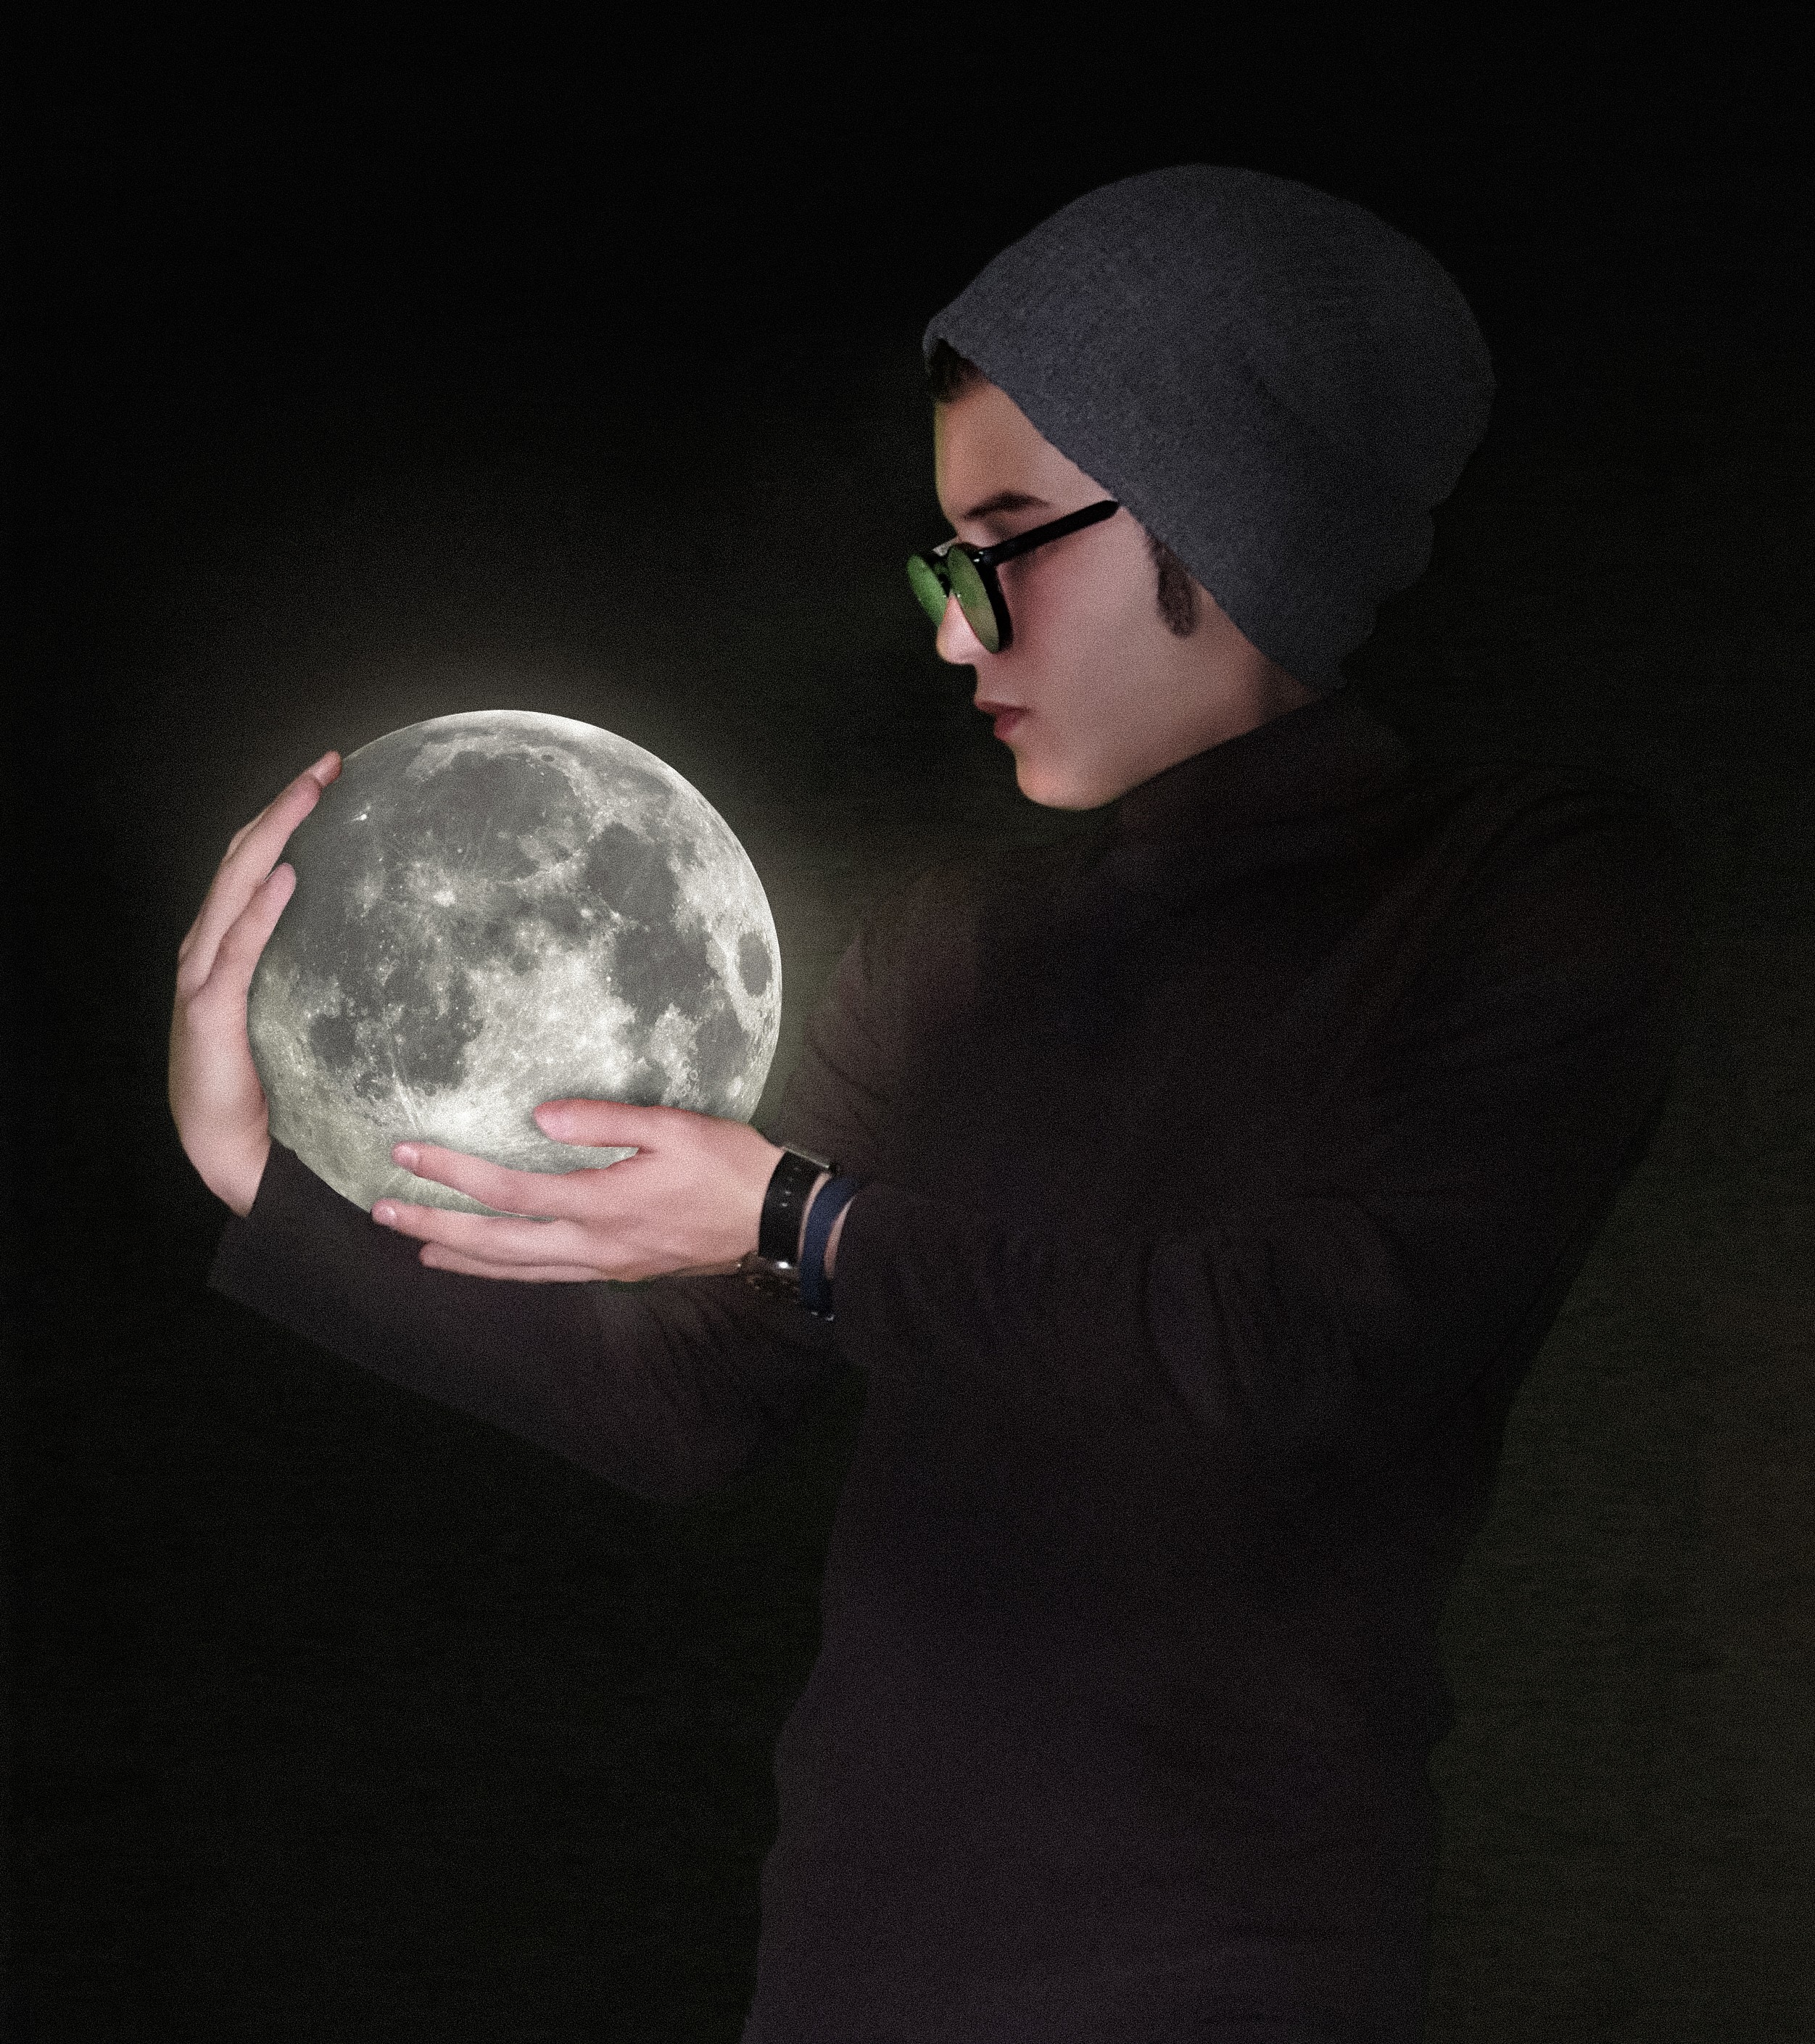 People 2503x2819 photoshopped Moon CGI glasses